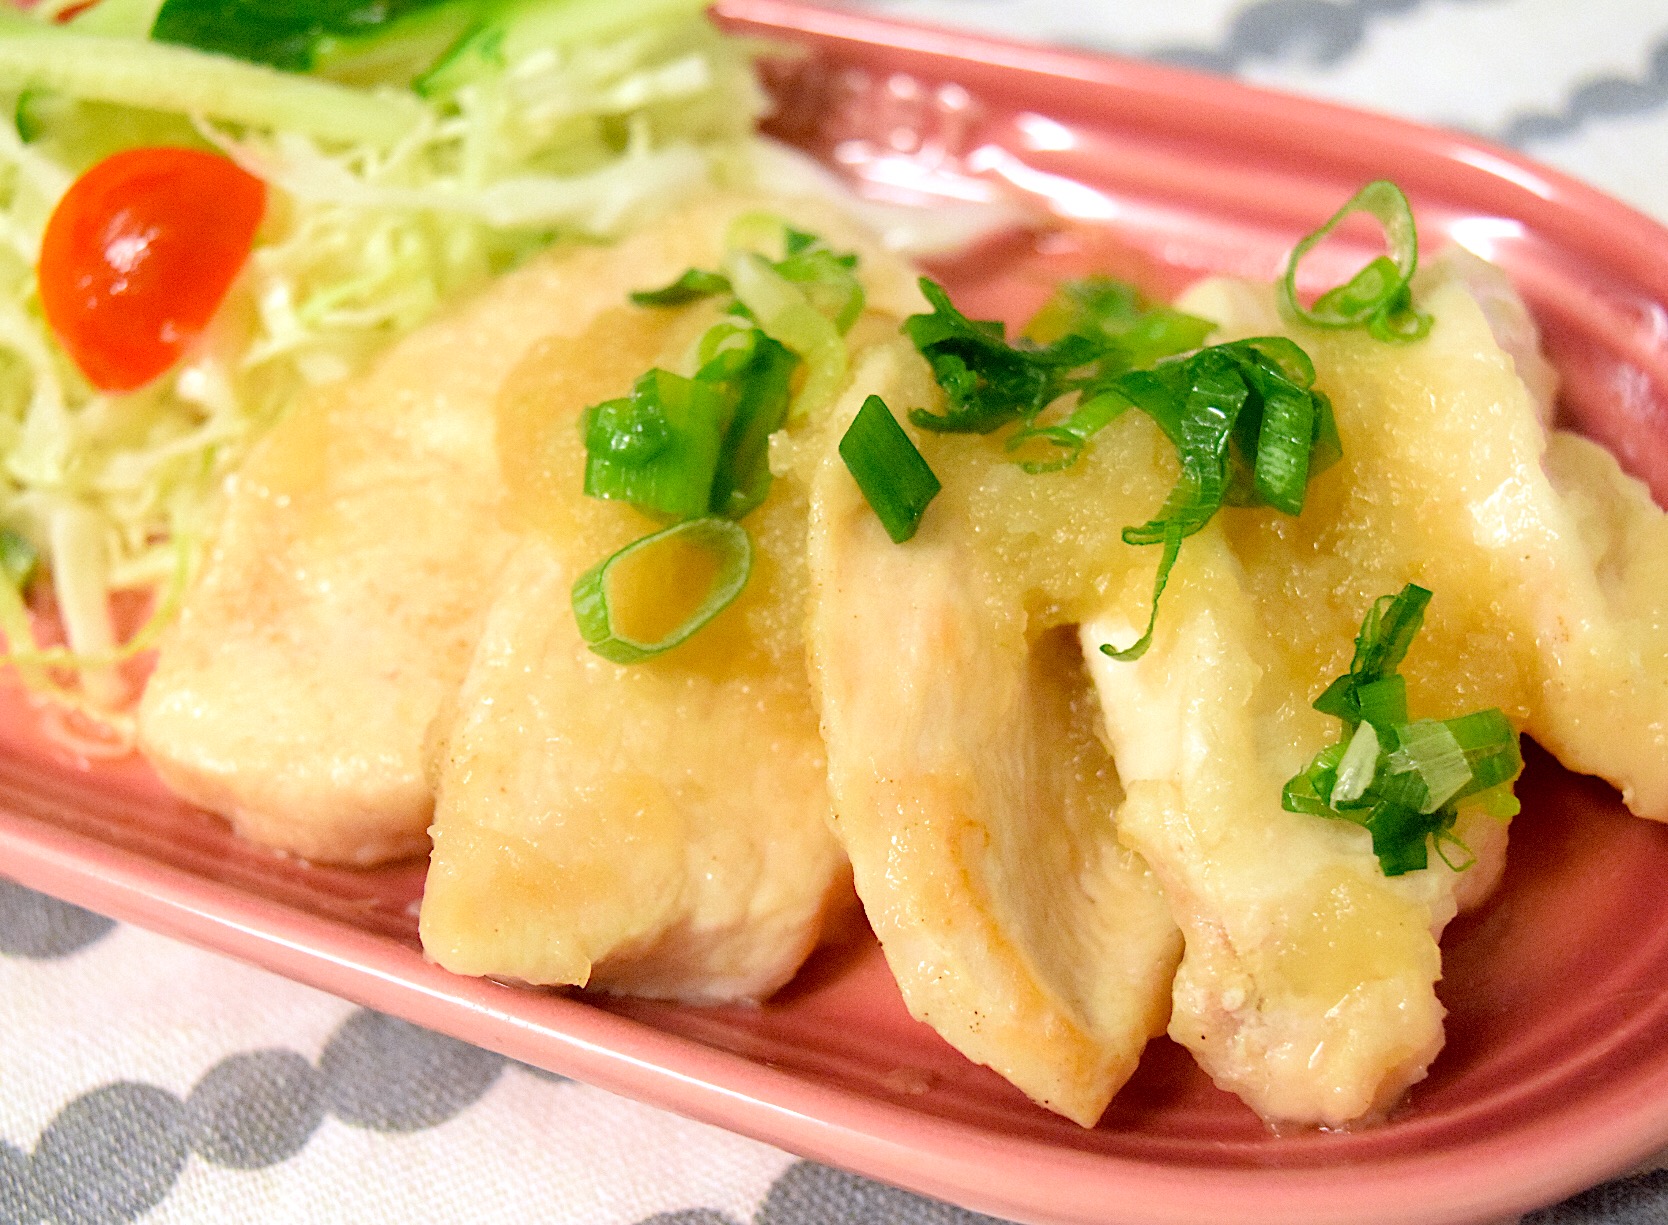 鶏胸肉と玉ねぎのおろし煮 ダイエット料理グランプリ19 ヤマサ醤油株式会社